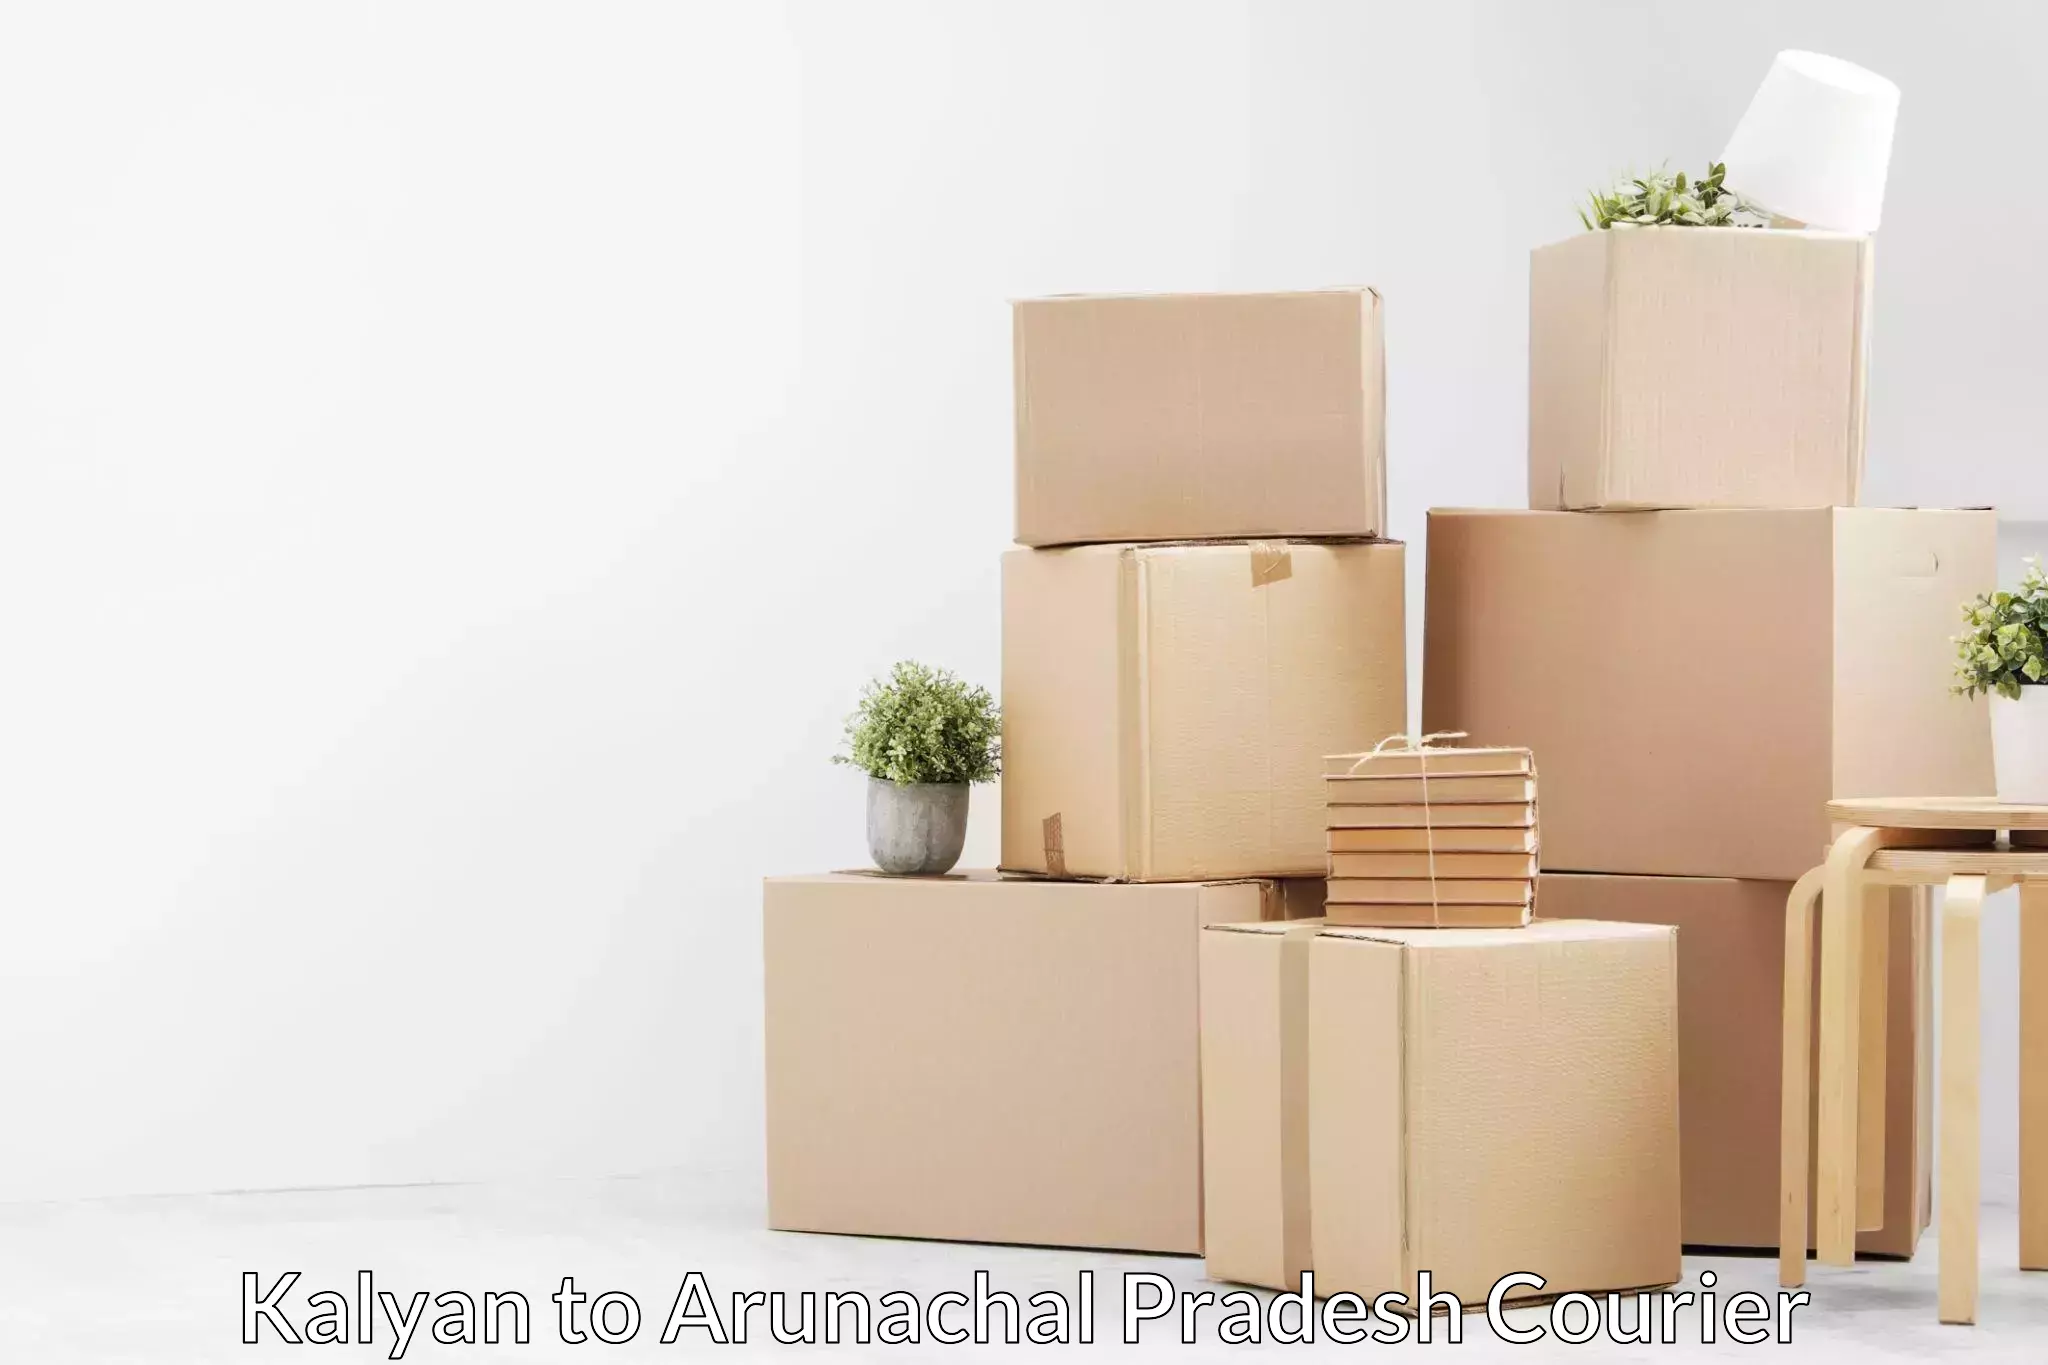 Professional packing and transport Kalyan to Arunachal Pradesh